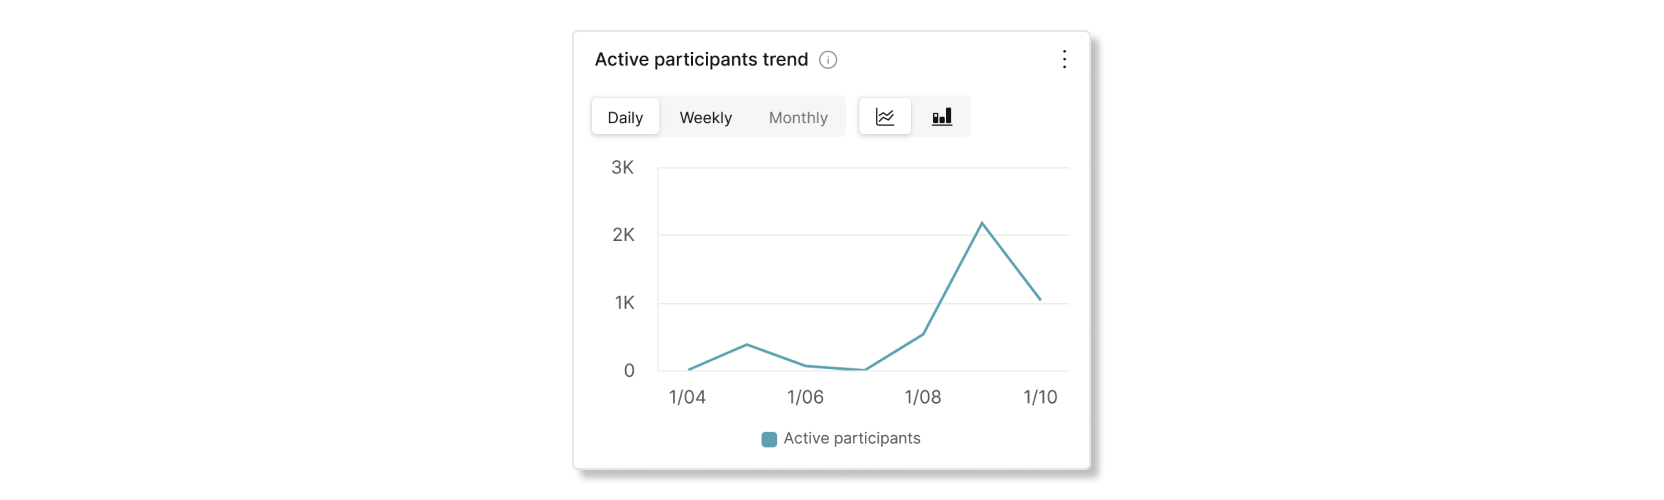 Trenddiagram för aktiva mötesdeltagare i Control Hub Slido-analys